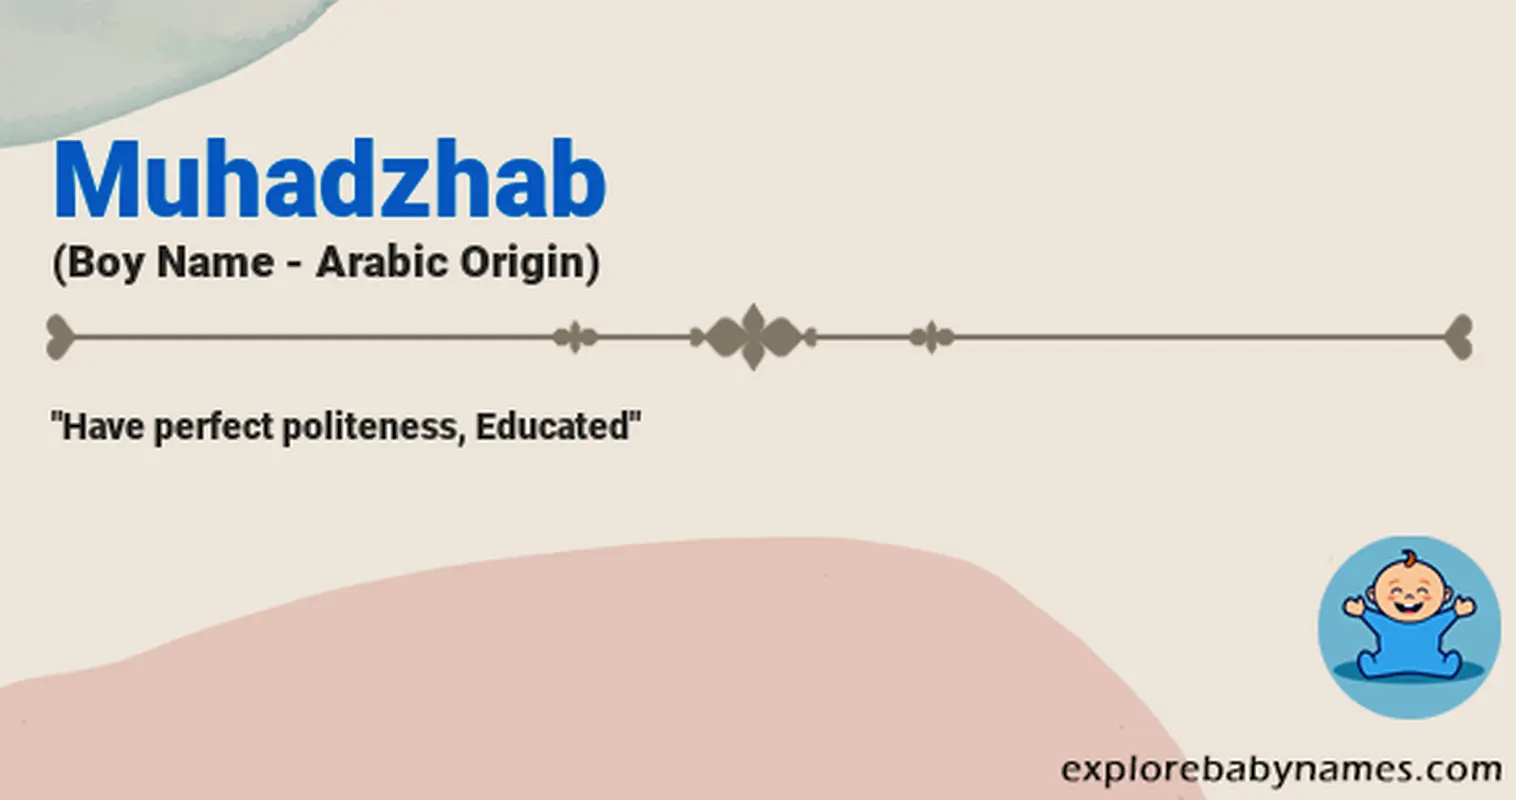 Meaning of Muhadzhab